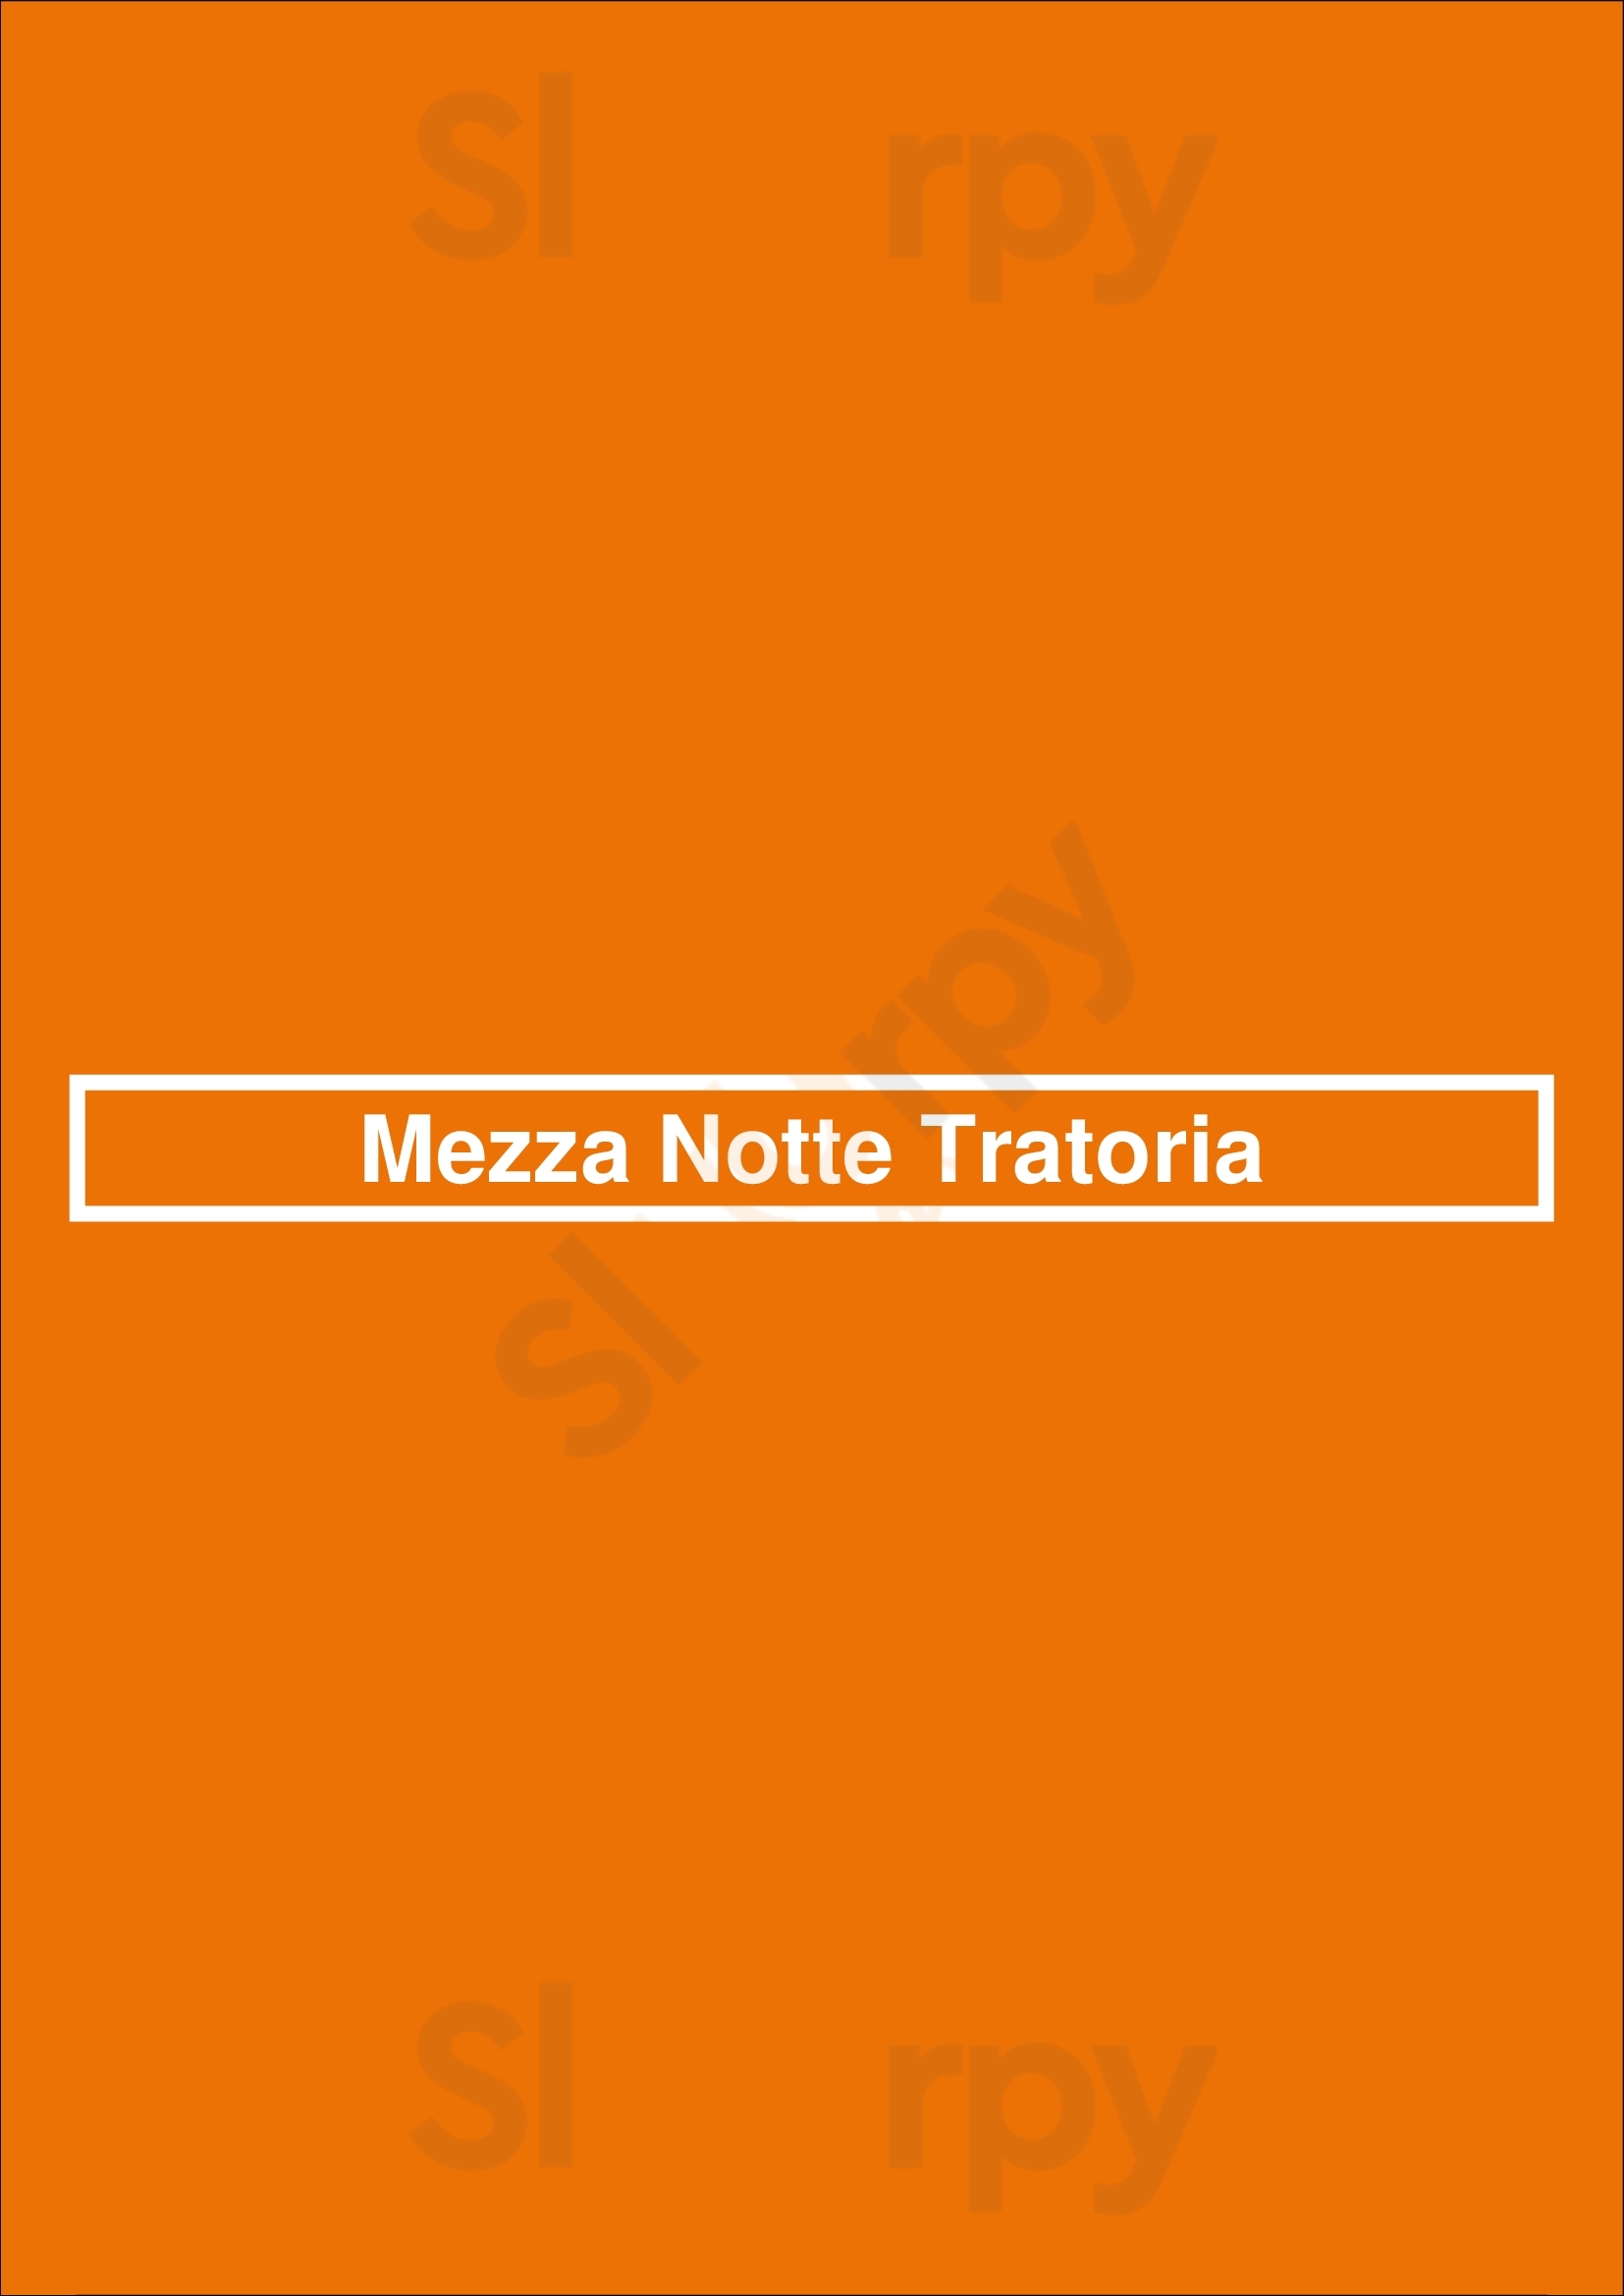 Mezza Notte Tratoria Vaughan Menu - 1